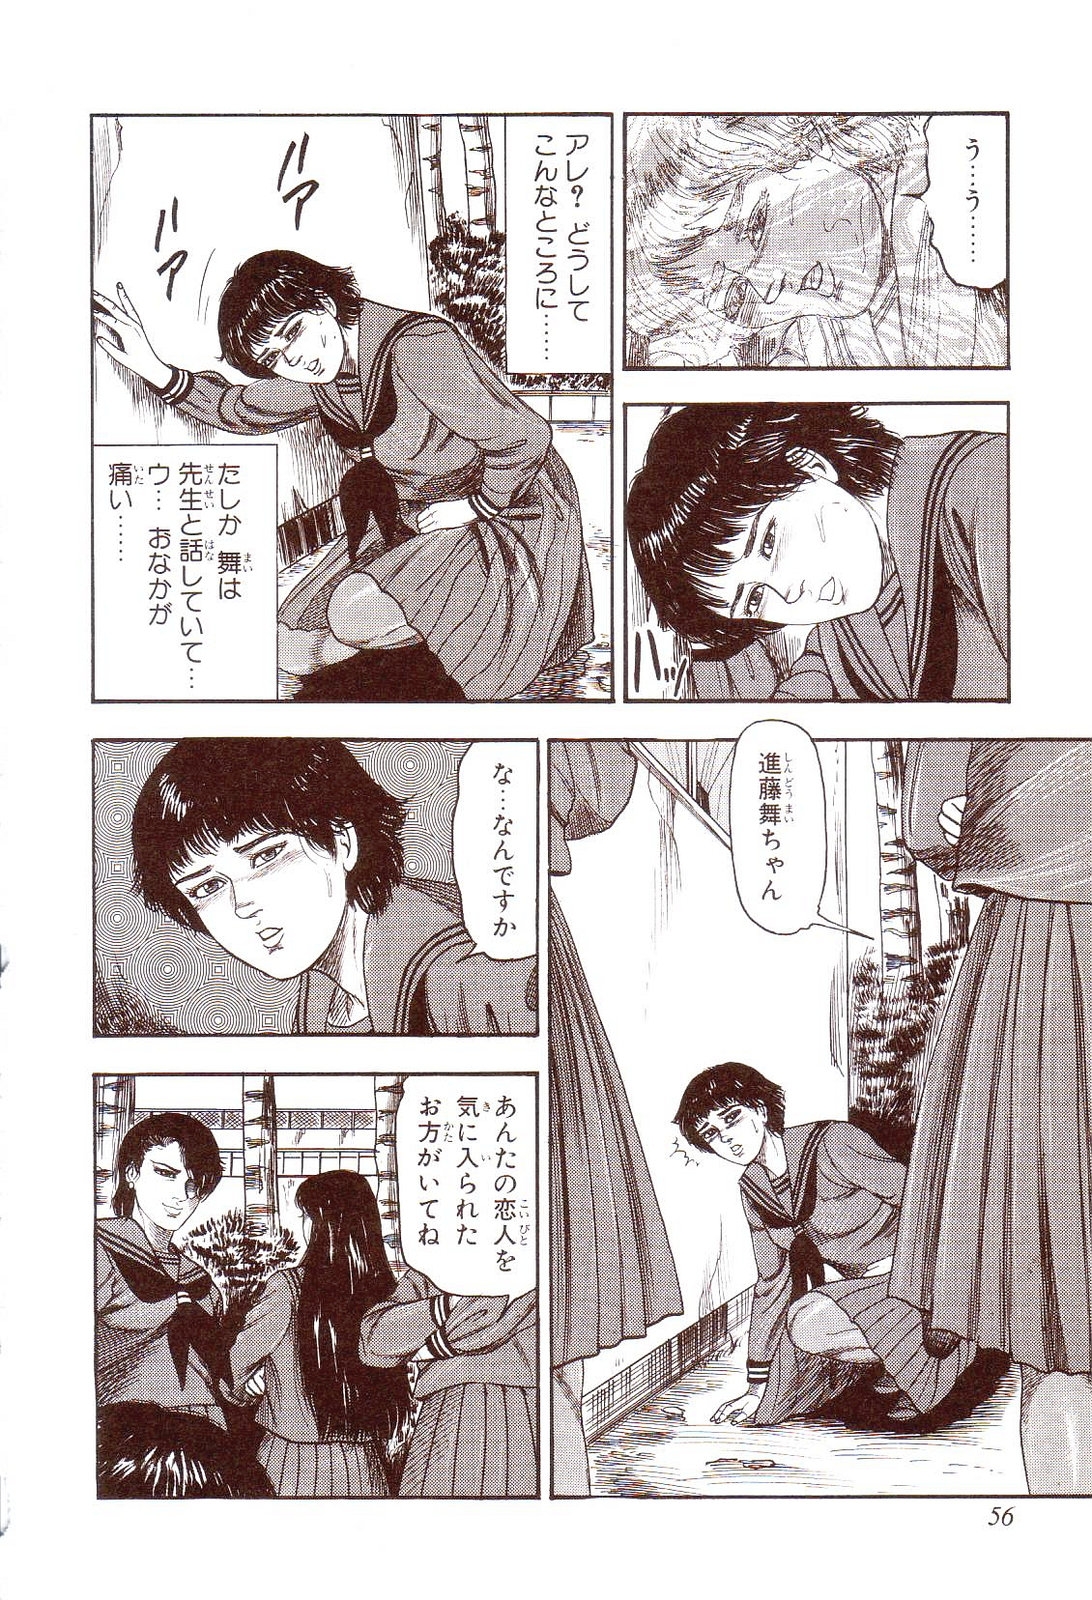 [Sanjou Tomomi] Inu ni Naritai -kyoufu manga shugyoku sakuhinshiyuu- 60